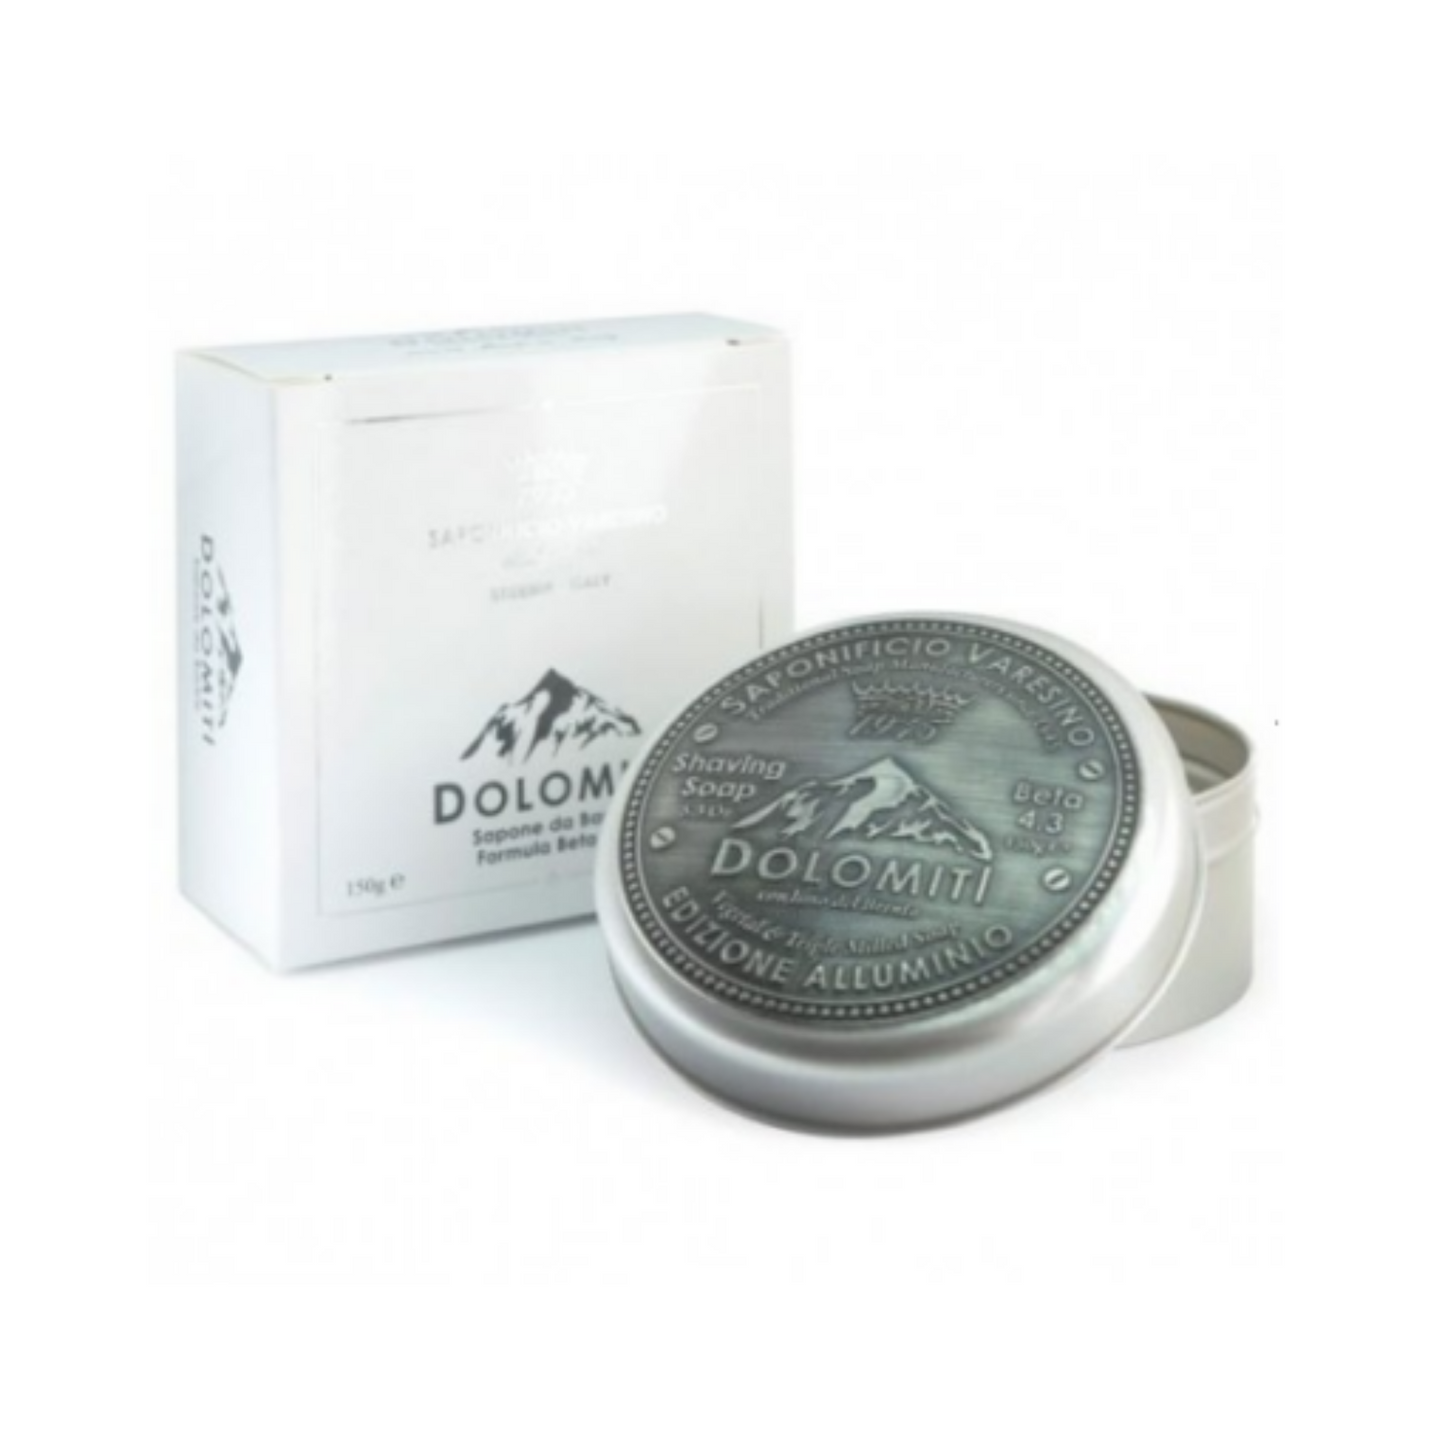 Primary Image of Dolomiti Shaving Soap In Aluminium Jar